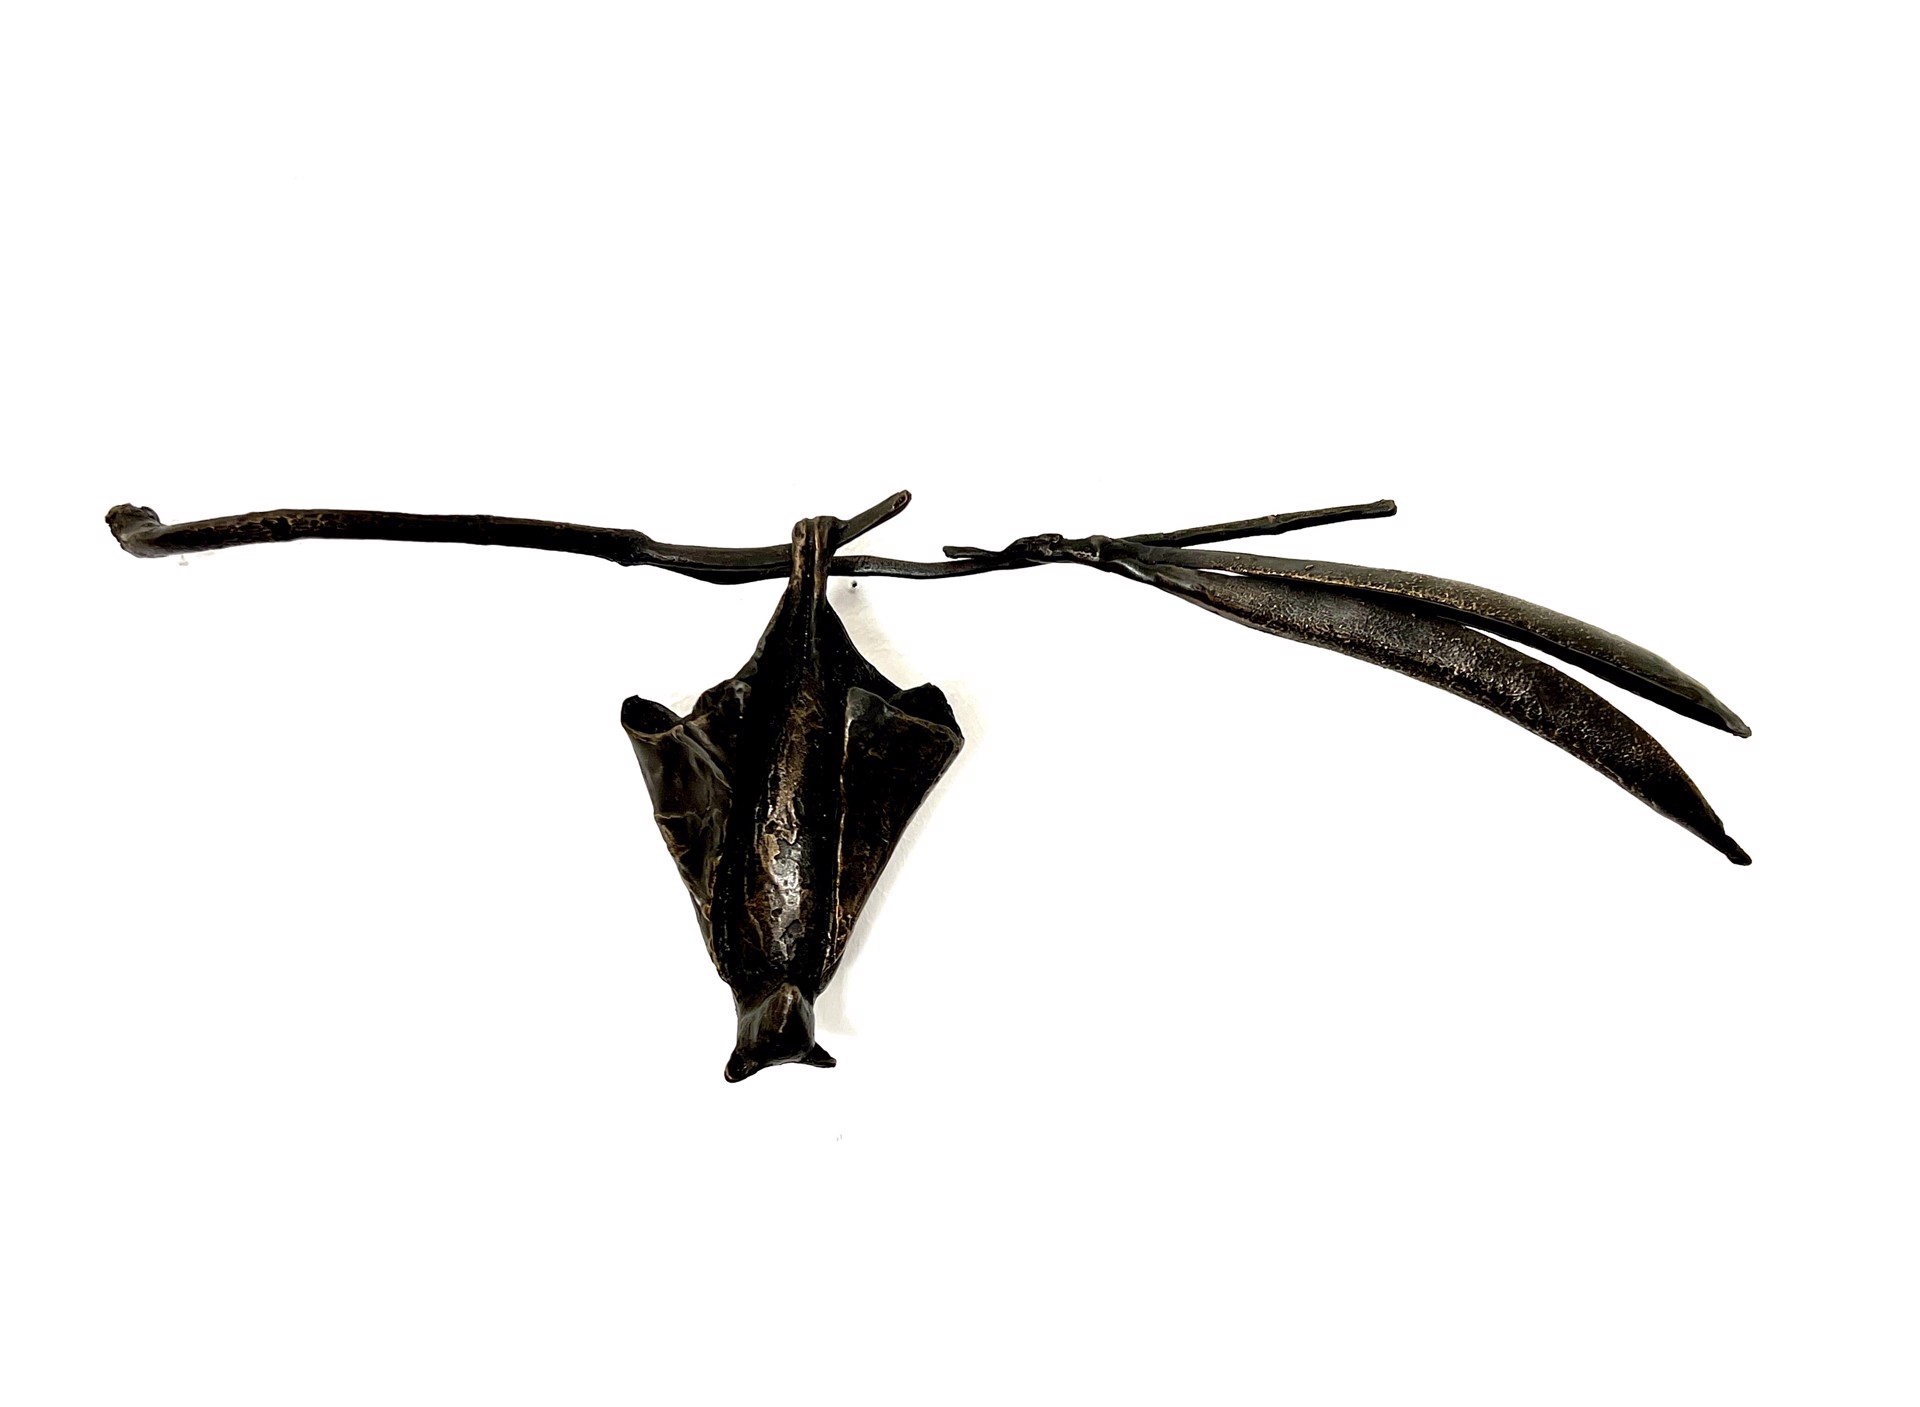 Bat on Catalpa by Copper Tritscheller